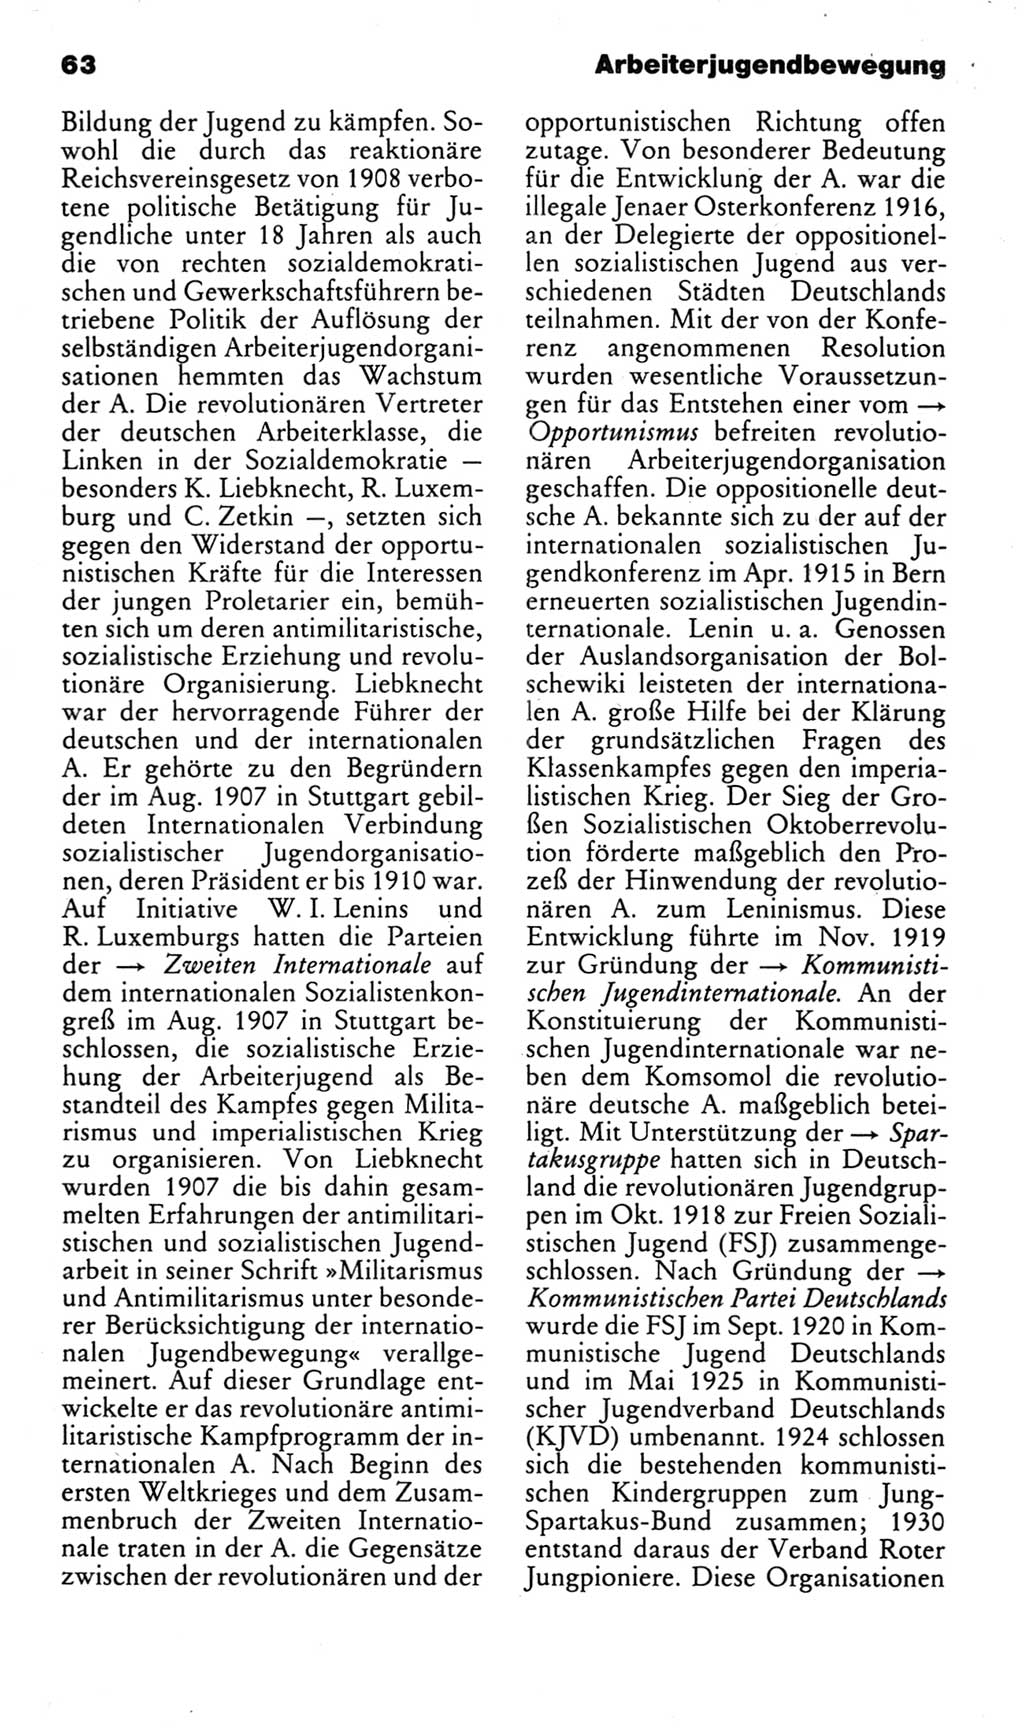 Kleines politisches Wörterbuch [Deutsche Demokratische Republik (DDR)] 1983, Seite 63 (Kl. pol. Wb. DDR 1983, S. 63)